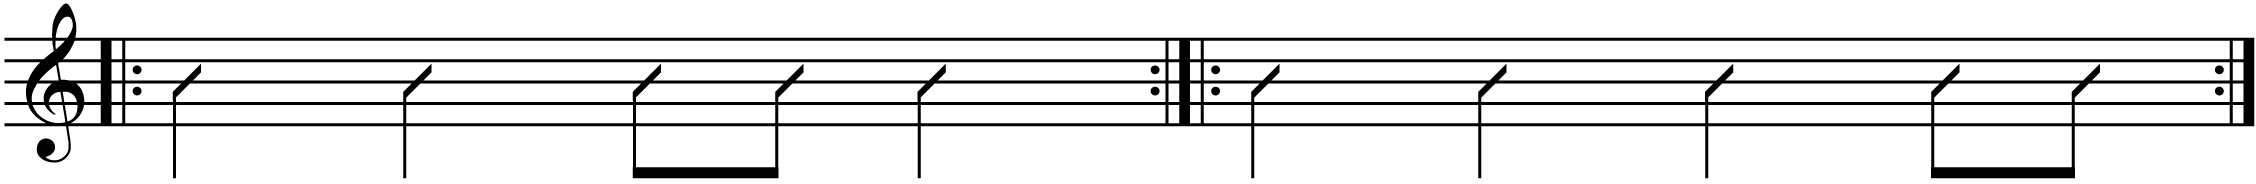 some syncopated rhythms.